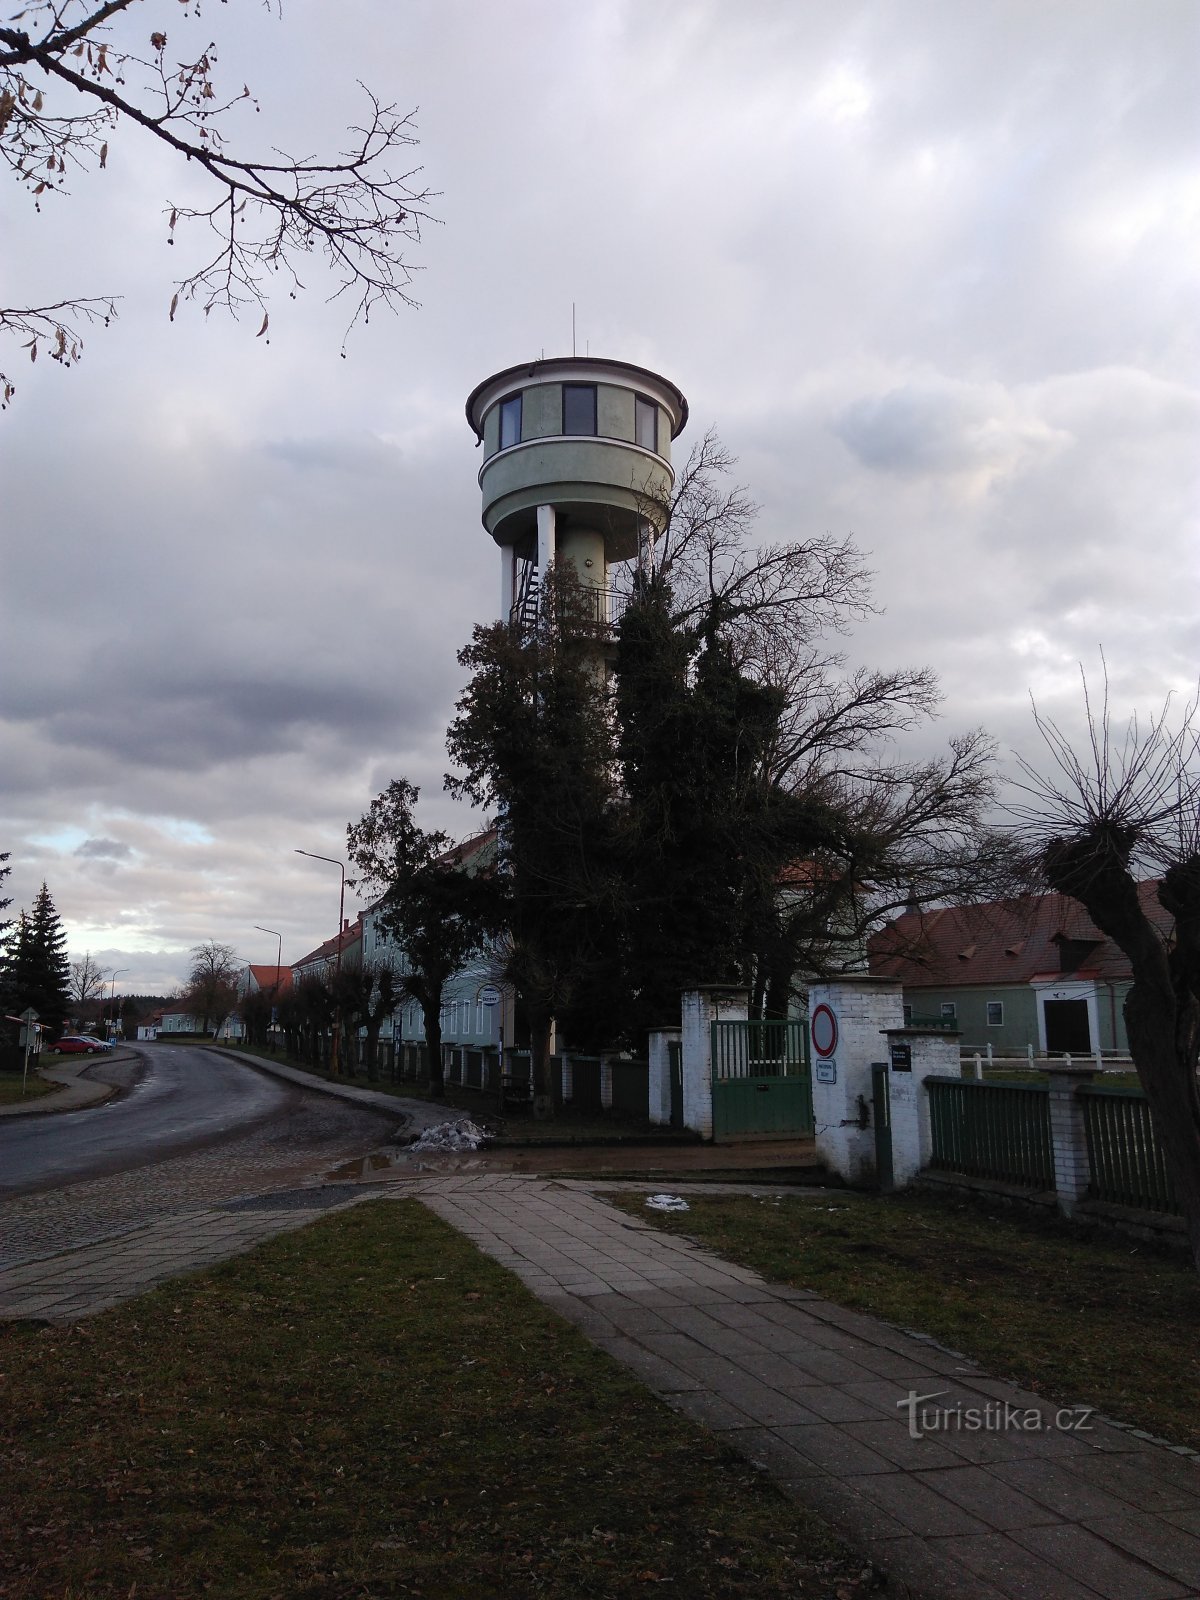 Kladruby nad Labem - Torre de observación de Vodojem